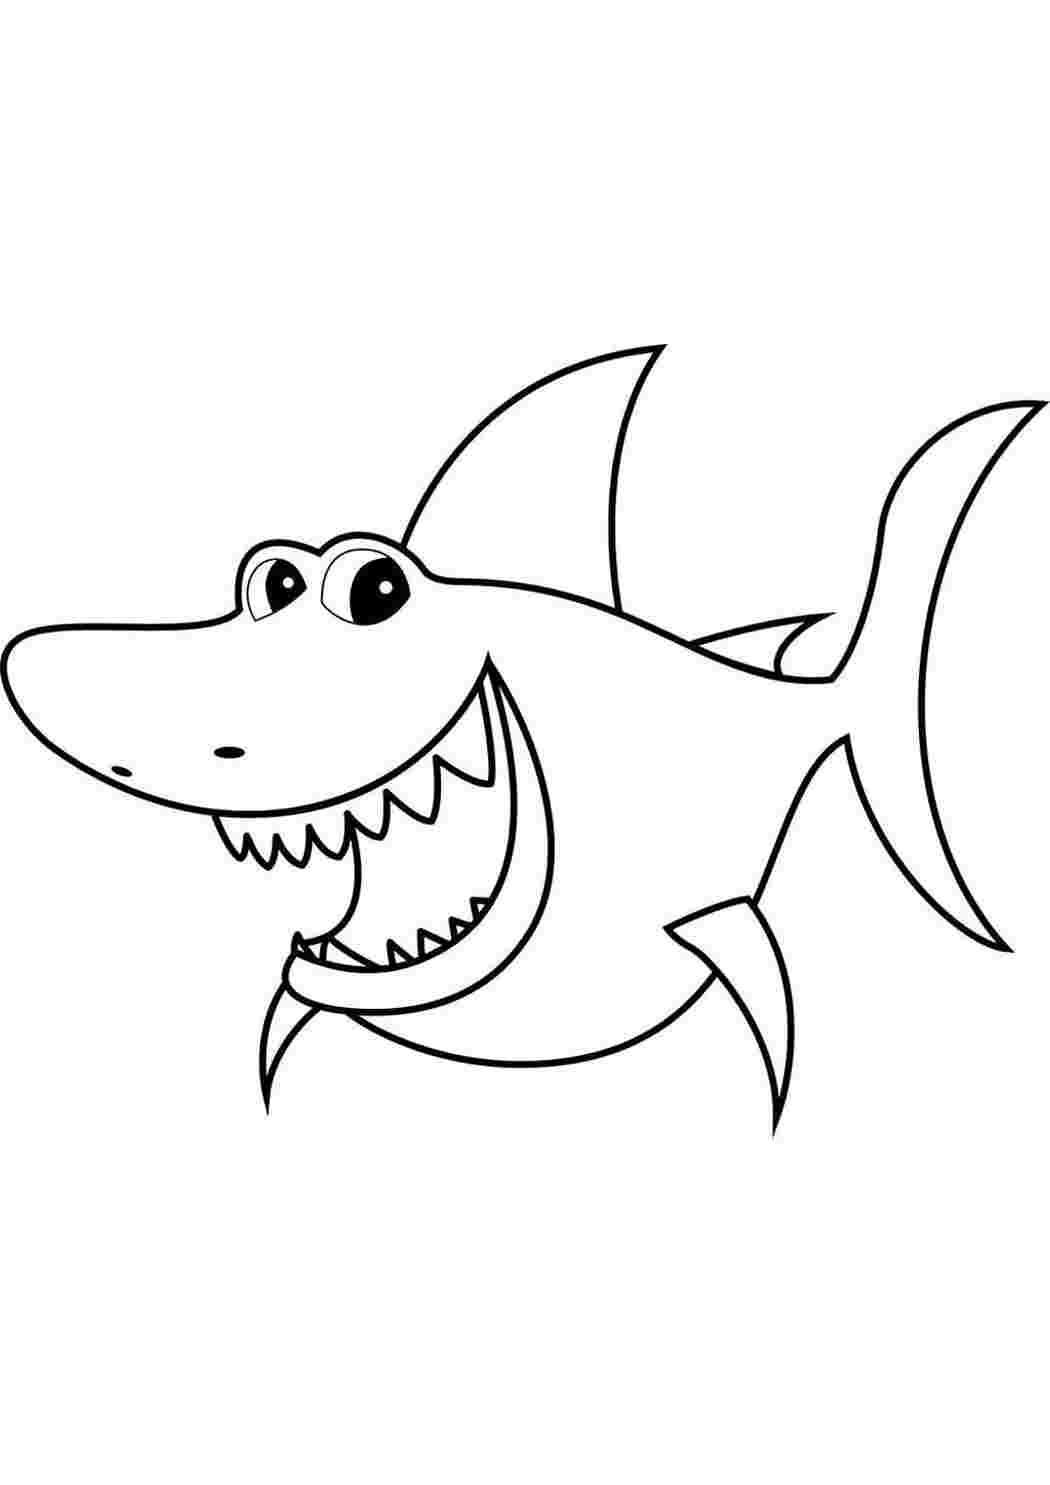 Раскраски Мультяшная акула. Распечатать раскраски на сайте. Мультяшная акула. Раскраска без регистарции.